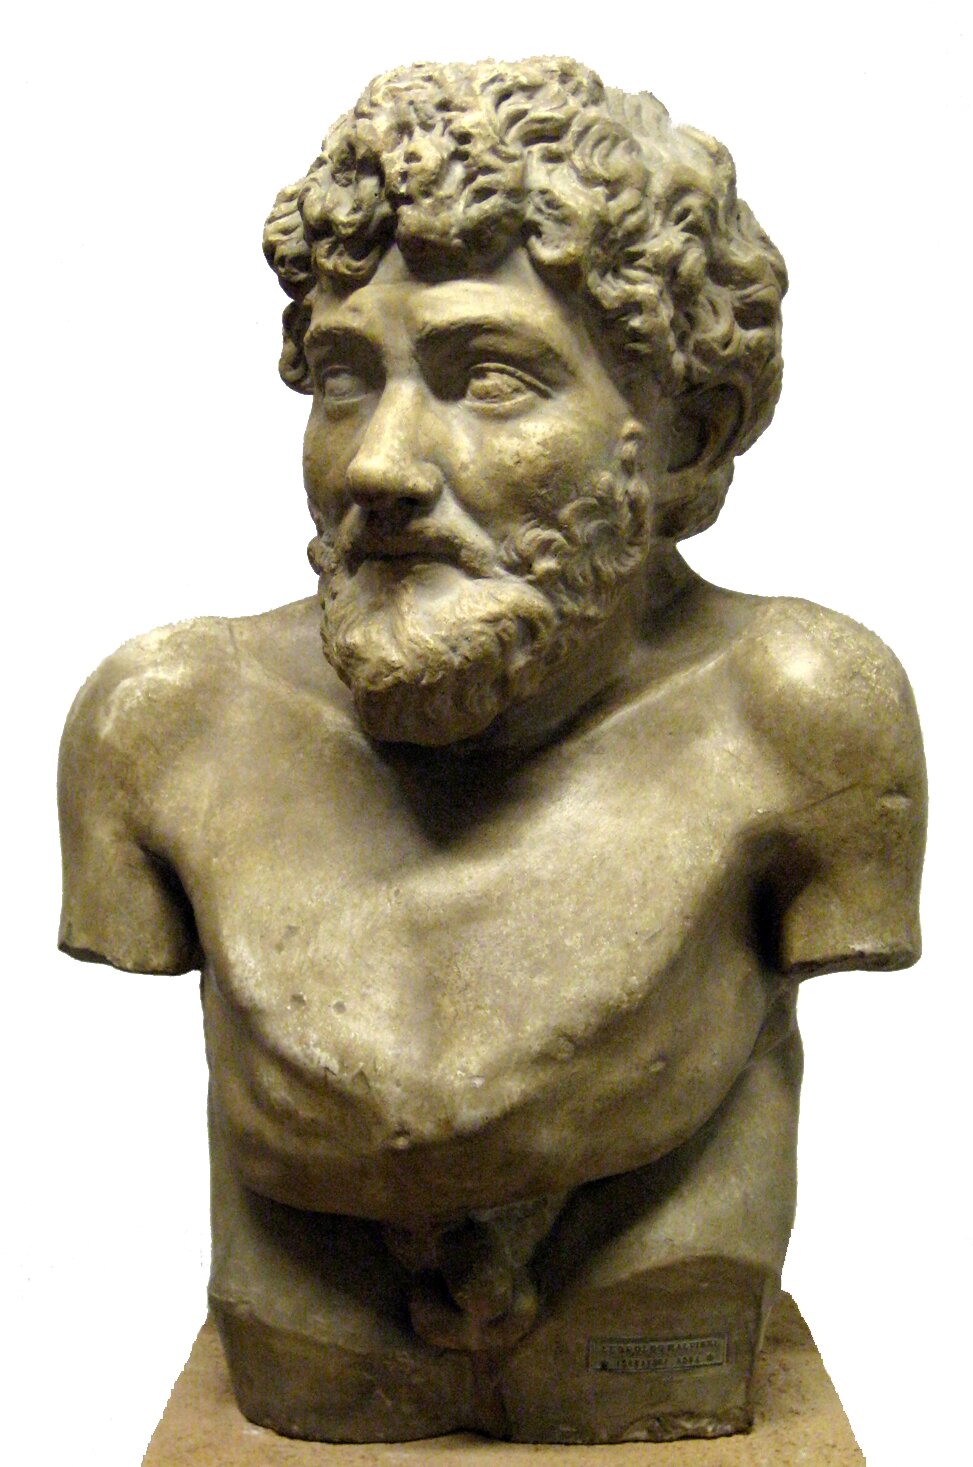 Rzeźba przedstawiająca Ezopa Rzeźba przedstawiająca Ezopa Źródło: fot. user:shakko, ok. I–V w. p.n.e., Villa Albani, Rzym, licencja: CC BY-SA 3.0.